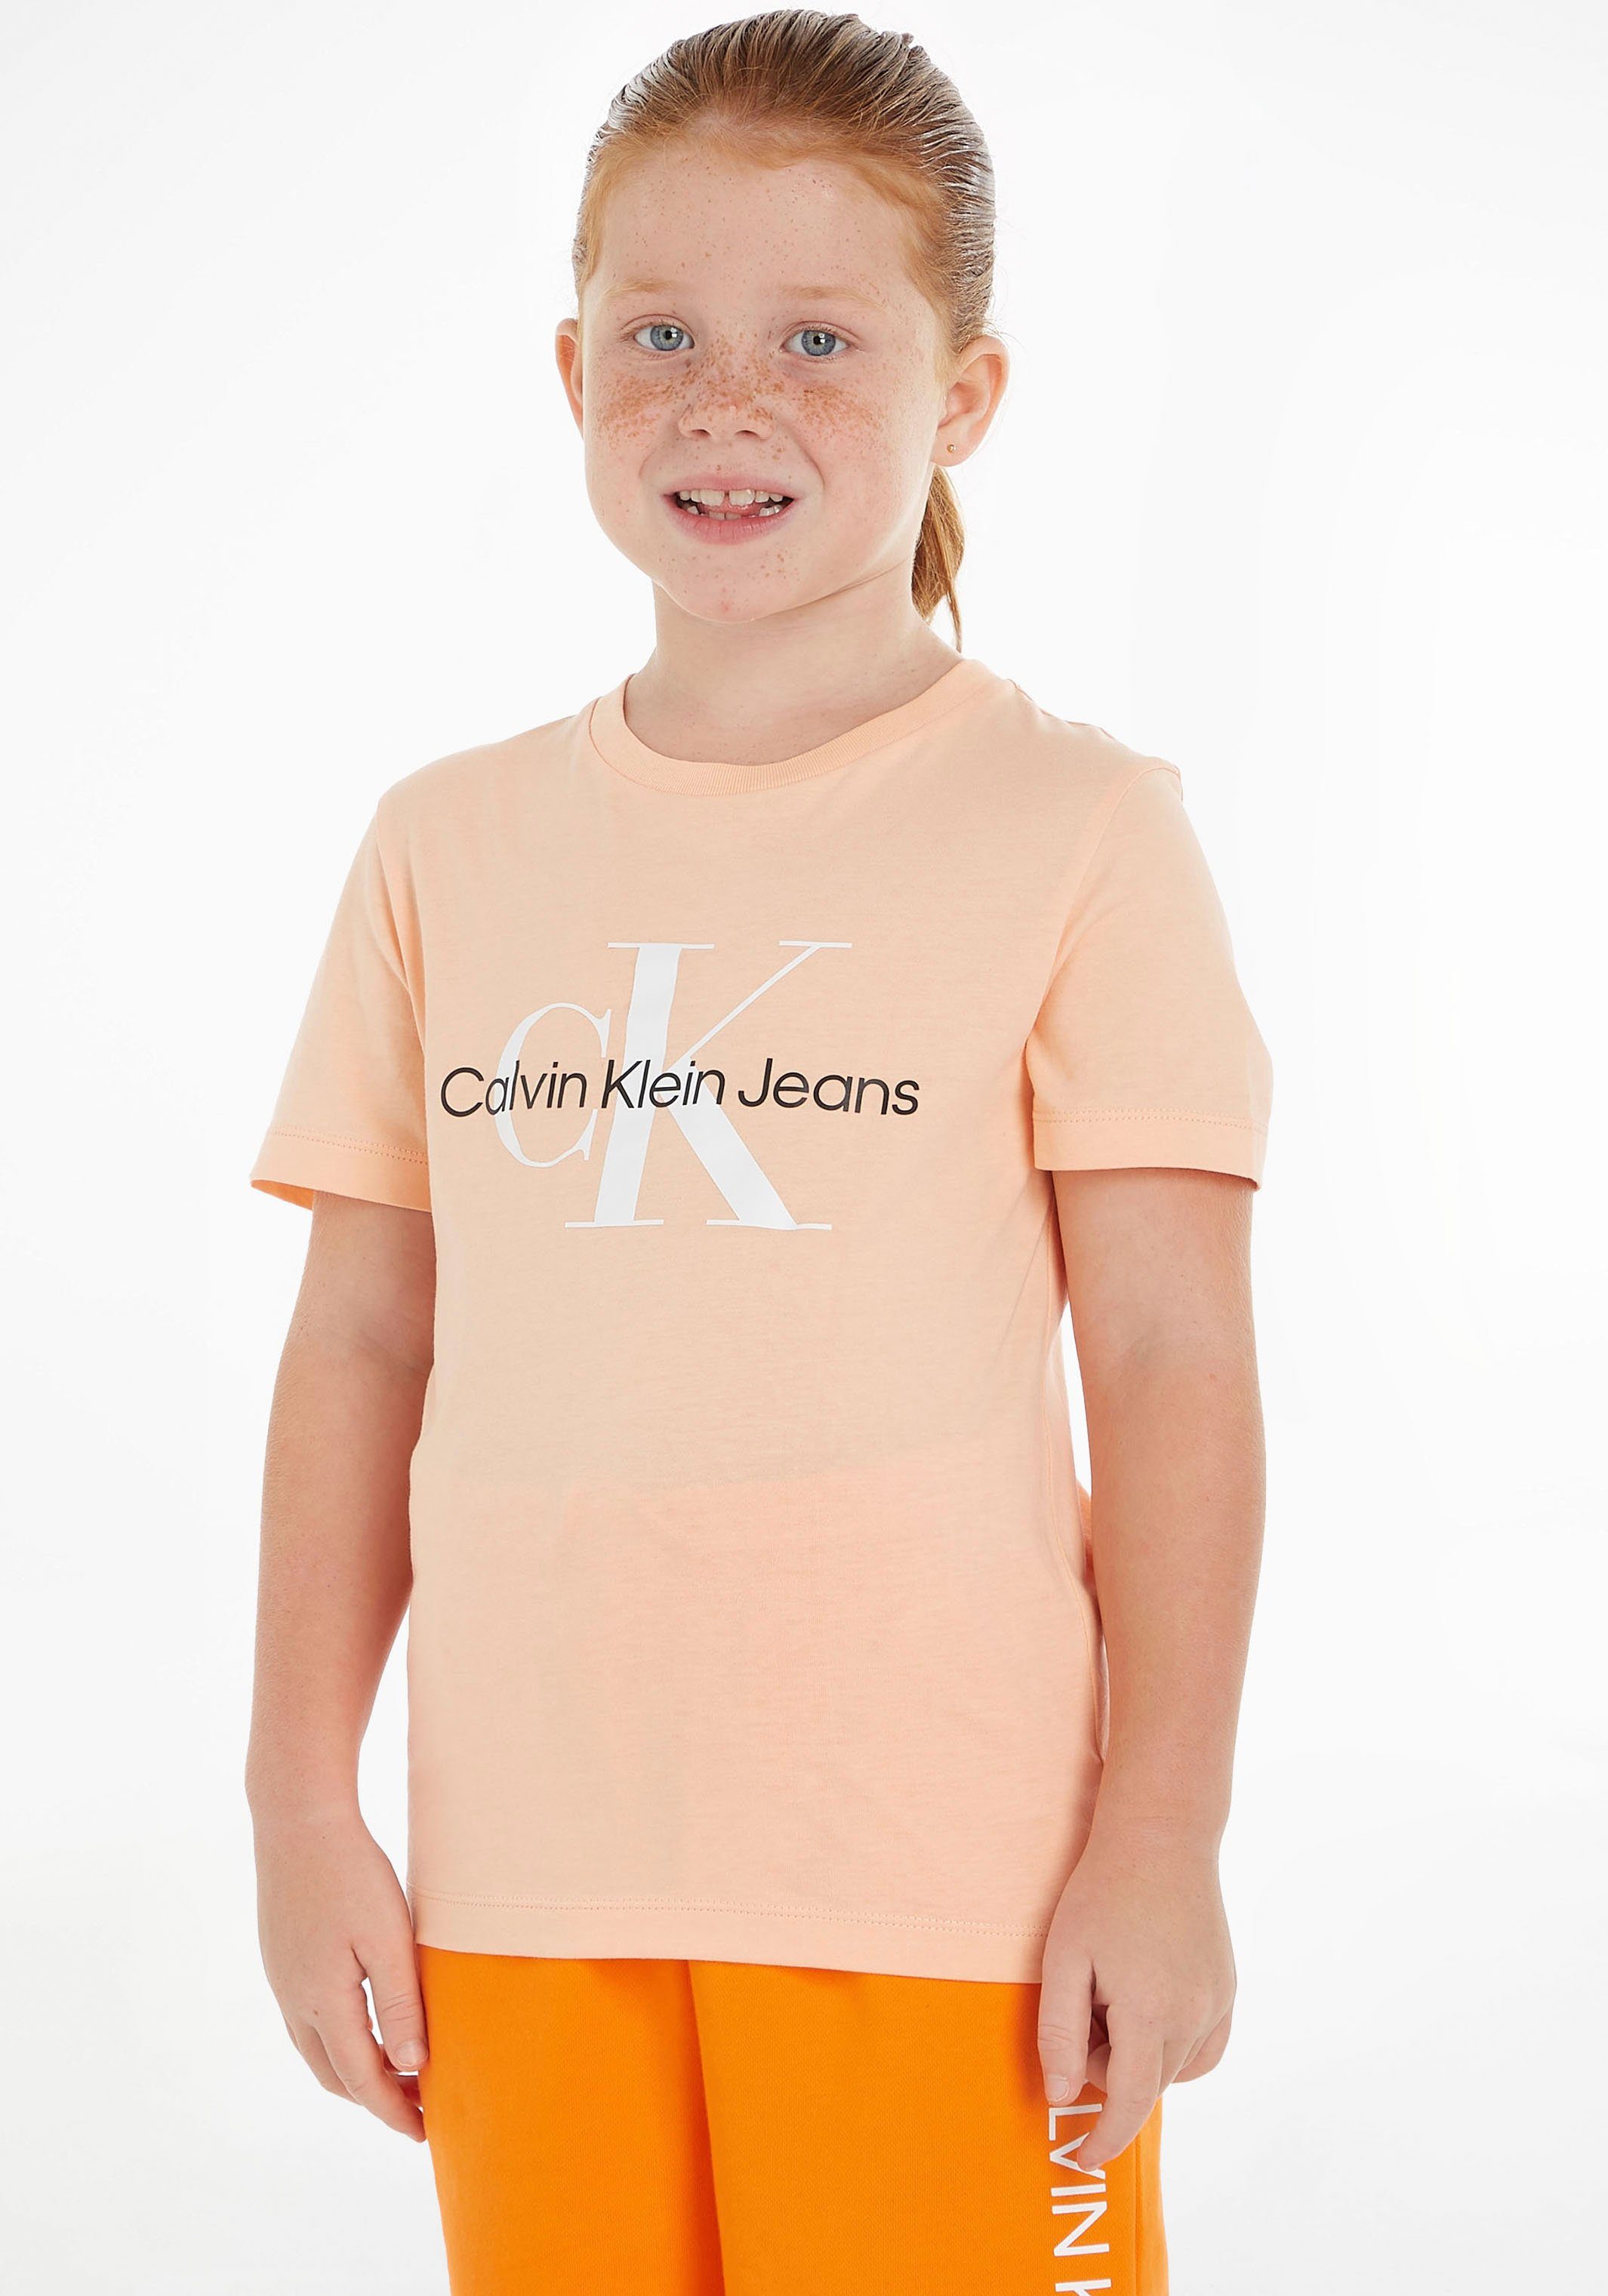 Calvin Klein Jeans T-Shirt MONOGRAM LOGO T-SHIRT Kinder Kids Junior MiniMe,für Mädchen und Jungen hellorange